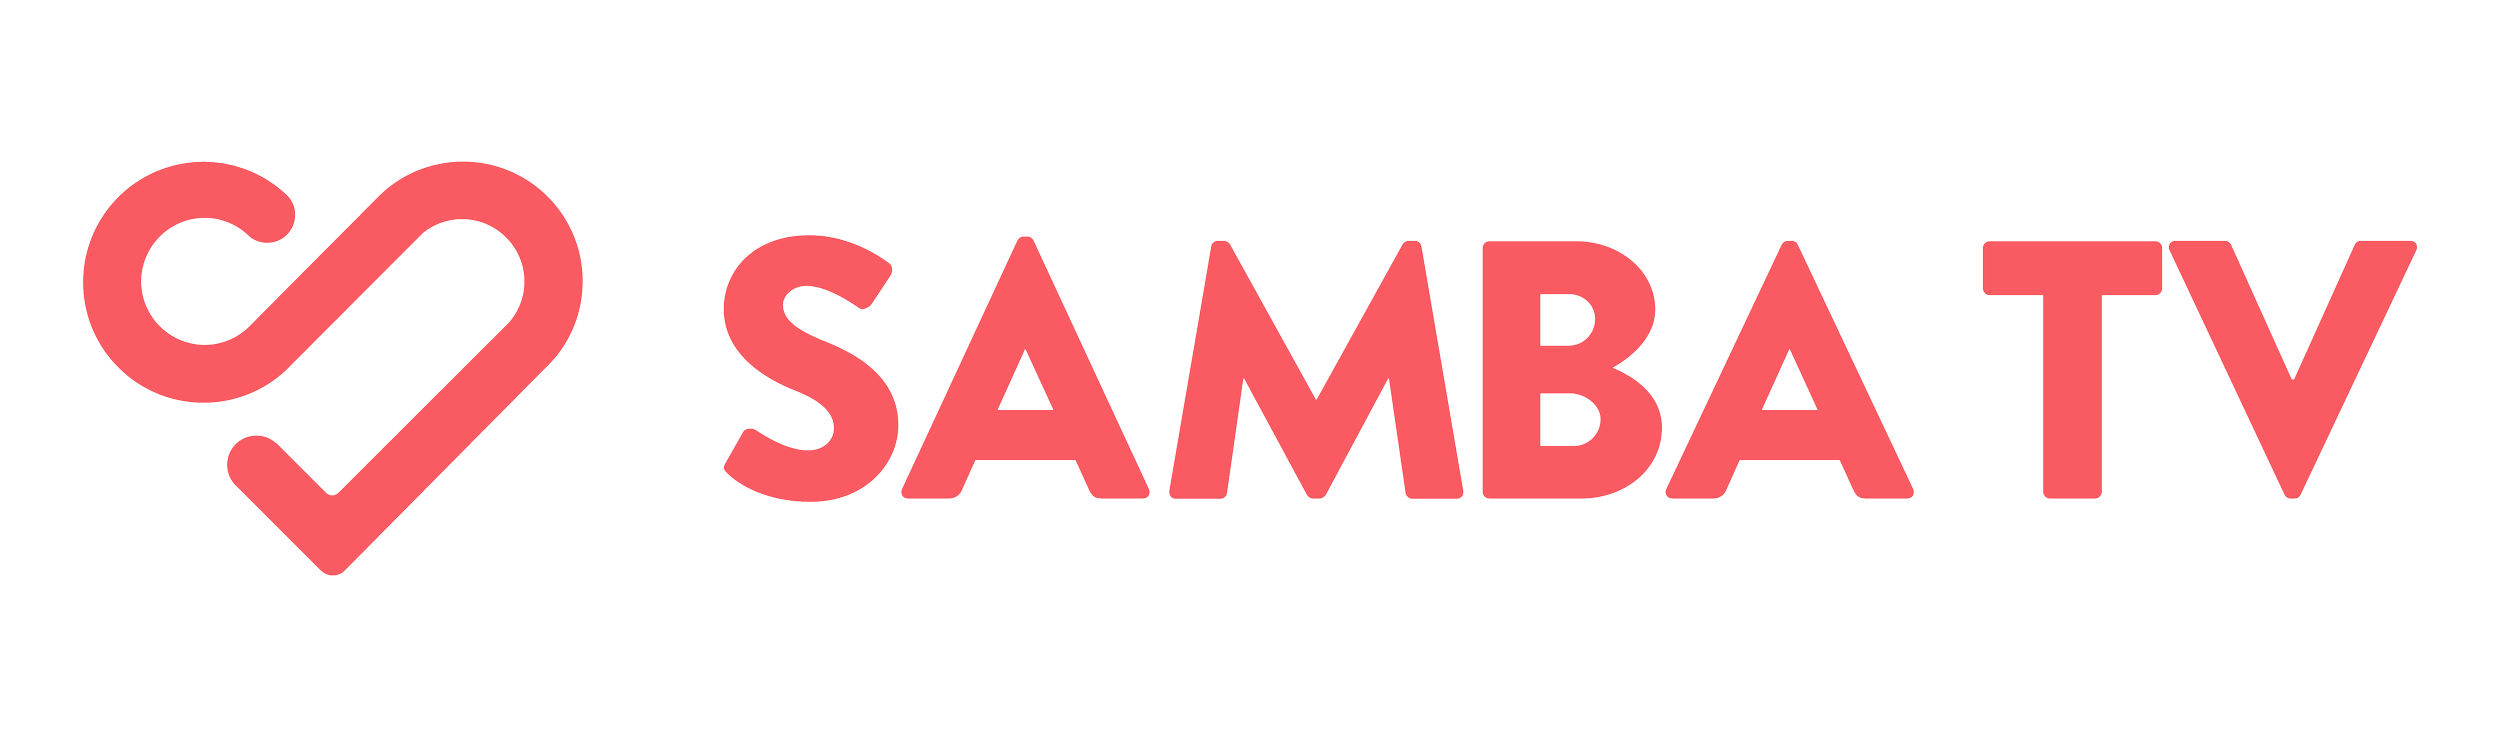 5fbdb64ab52eeb829413c463_samba_logo_heart_Wordmark_Red-2018.png